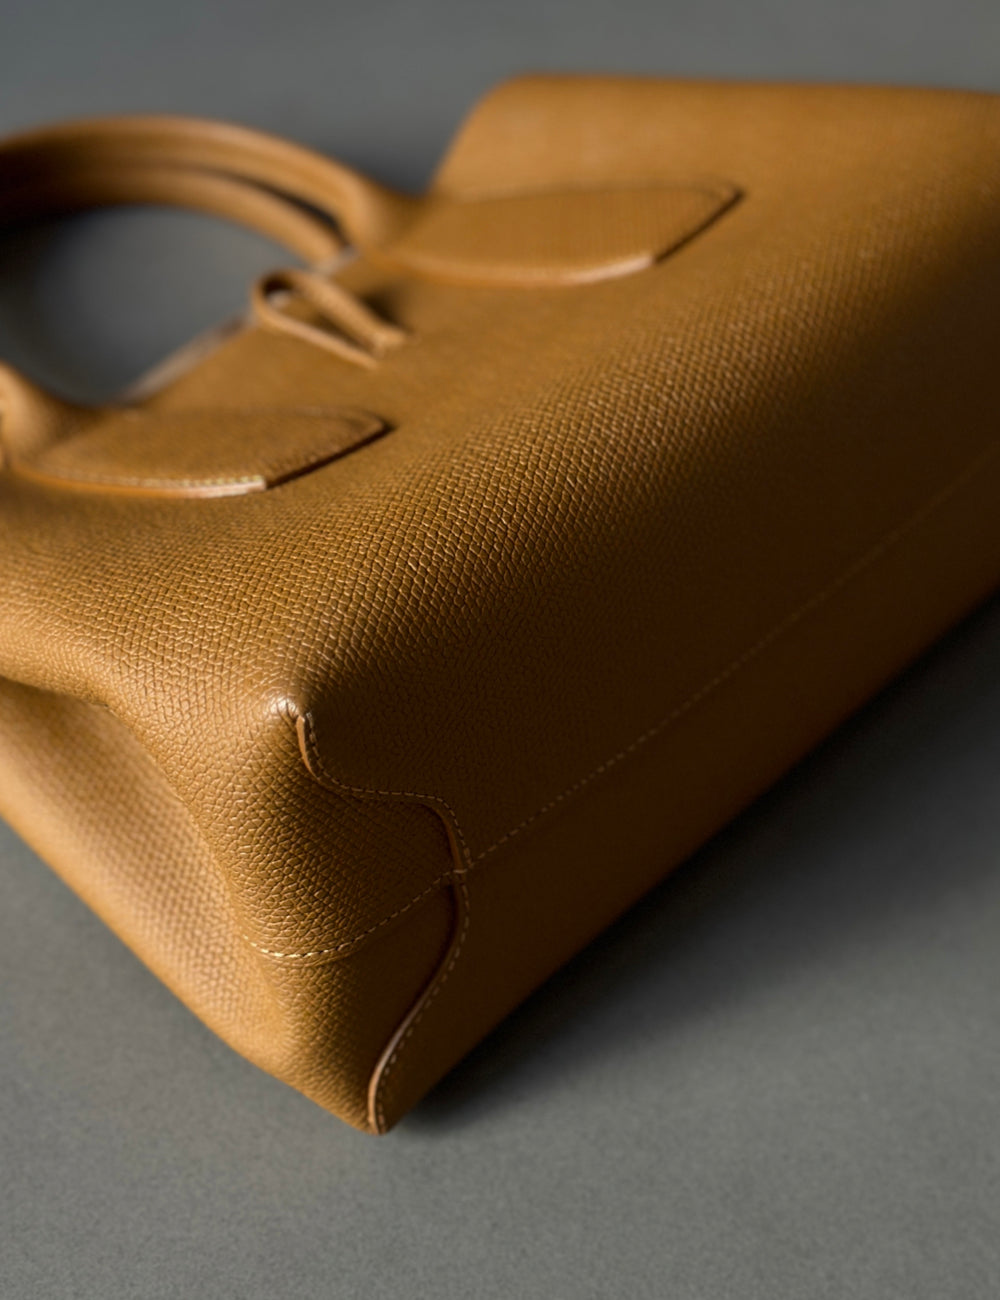 Longchamp-Tasche – geröstetes Roseau